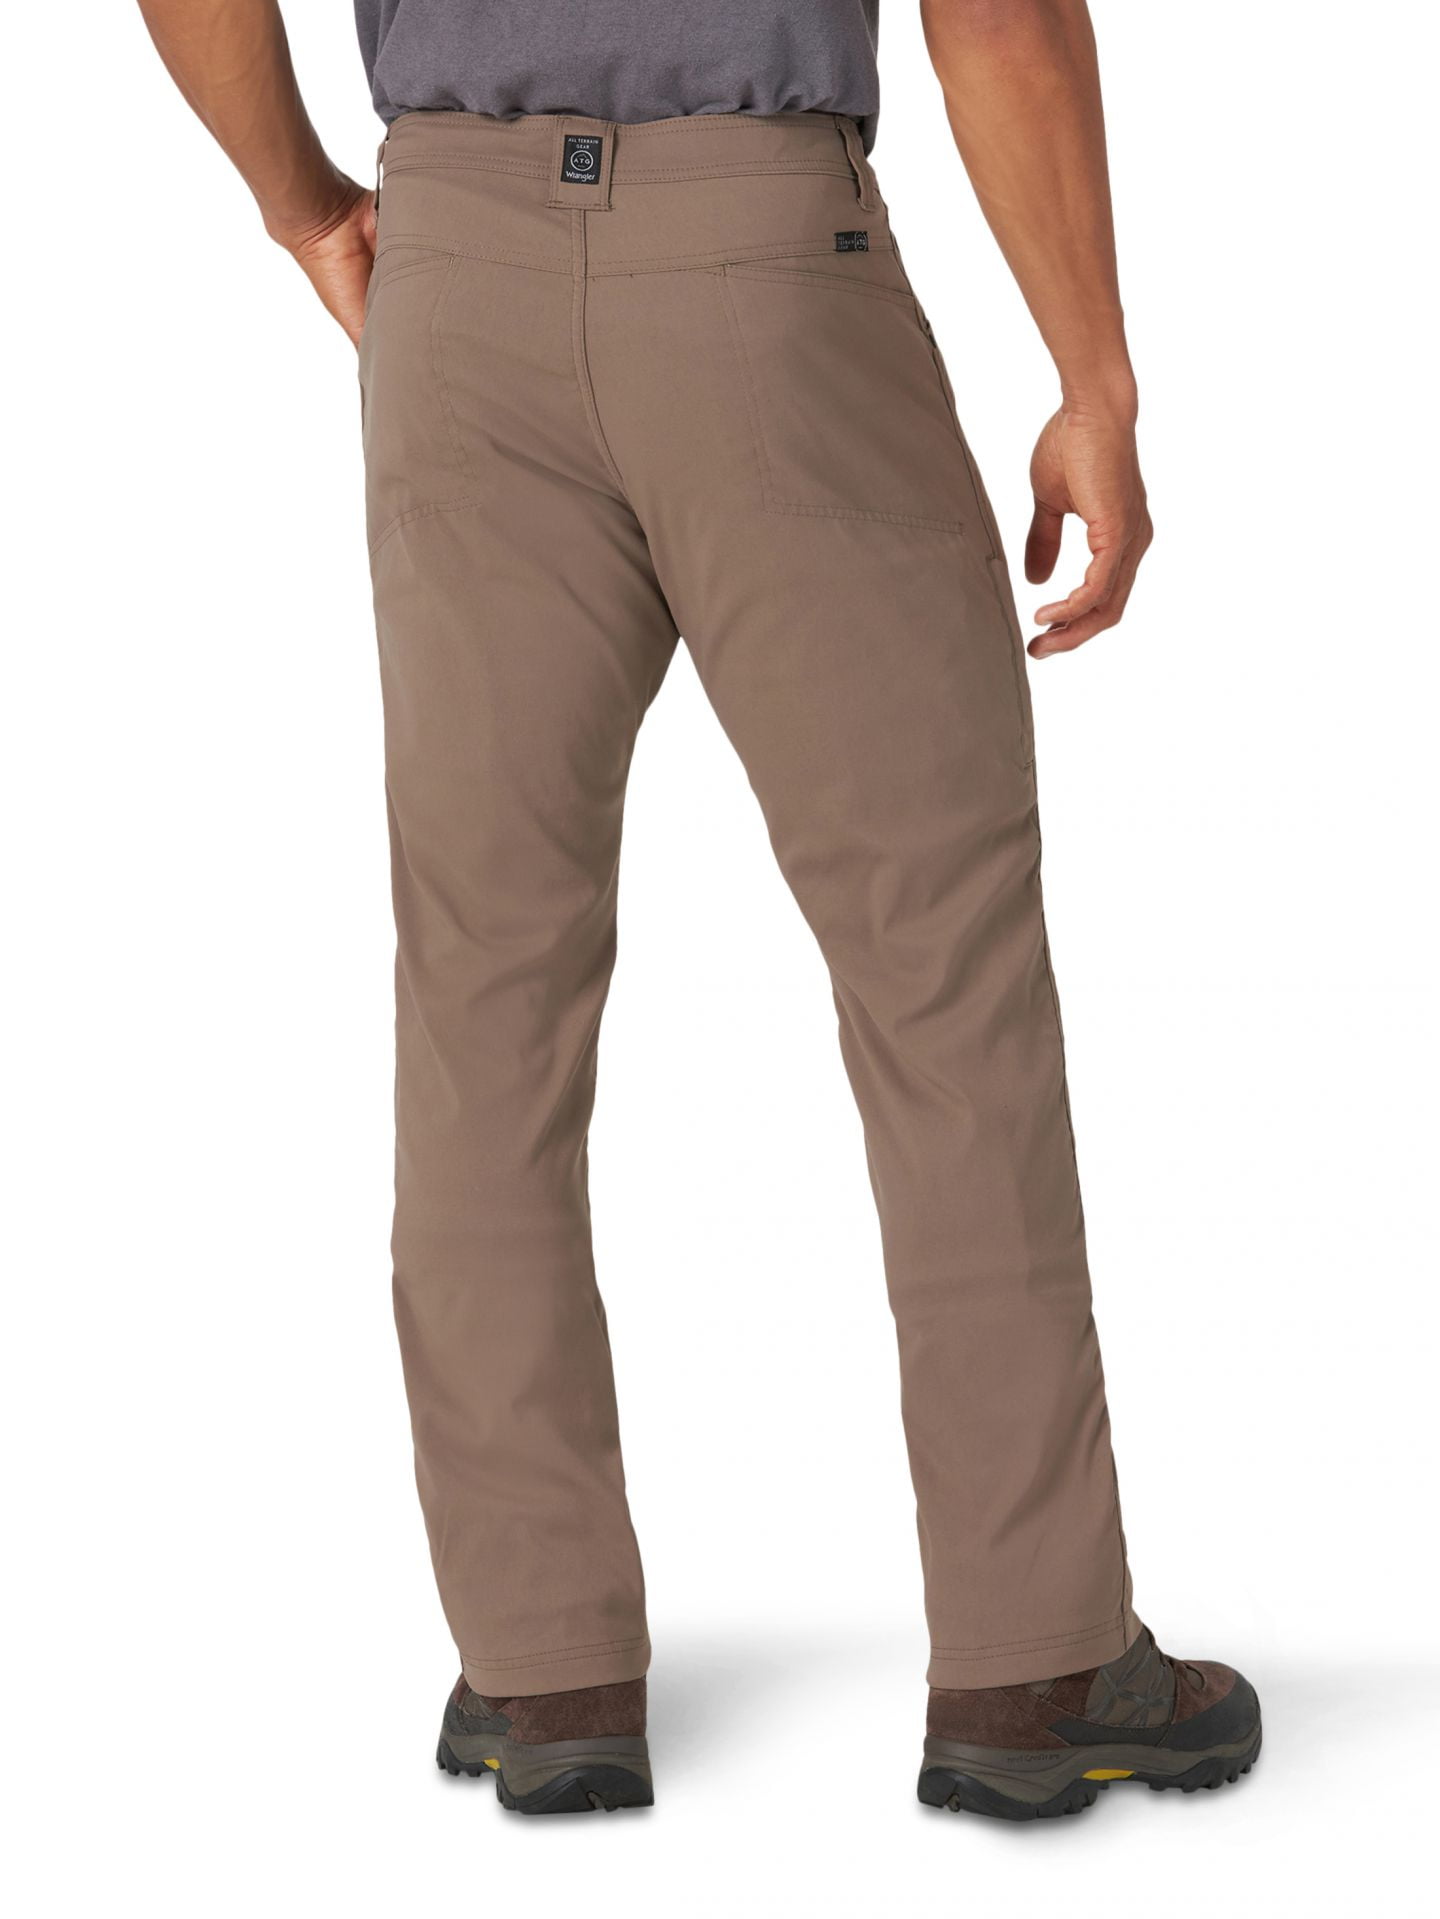 Wrangler Men's ATG Fleece Lined Pant, Falcon, 30X32 